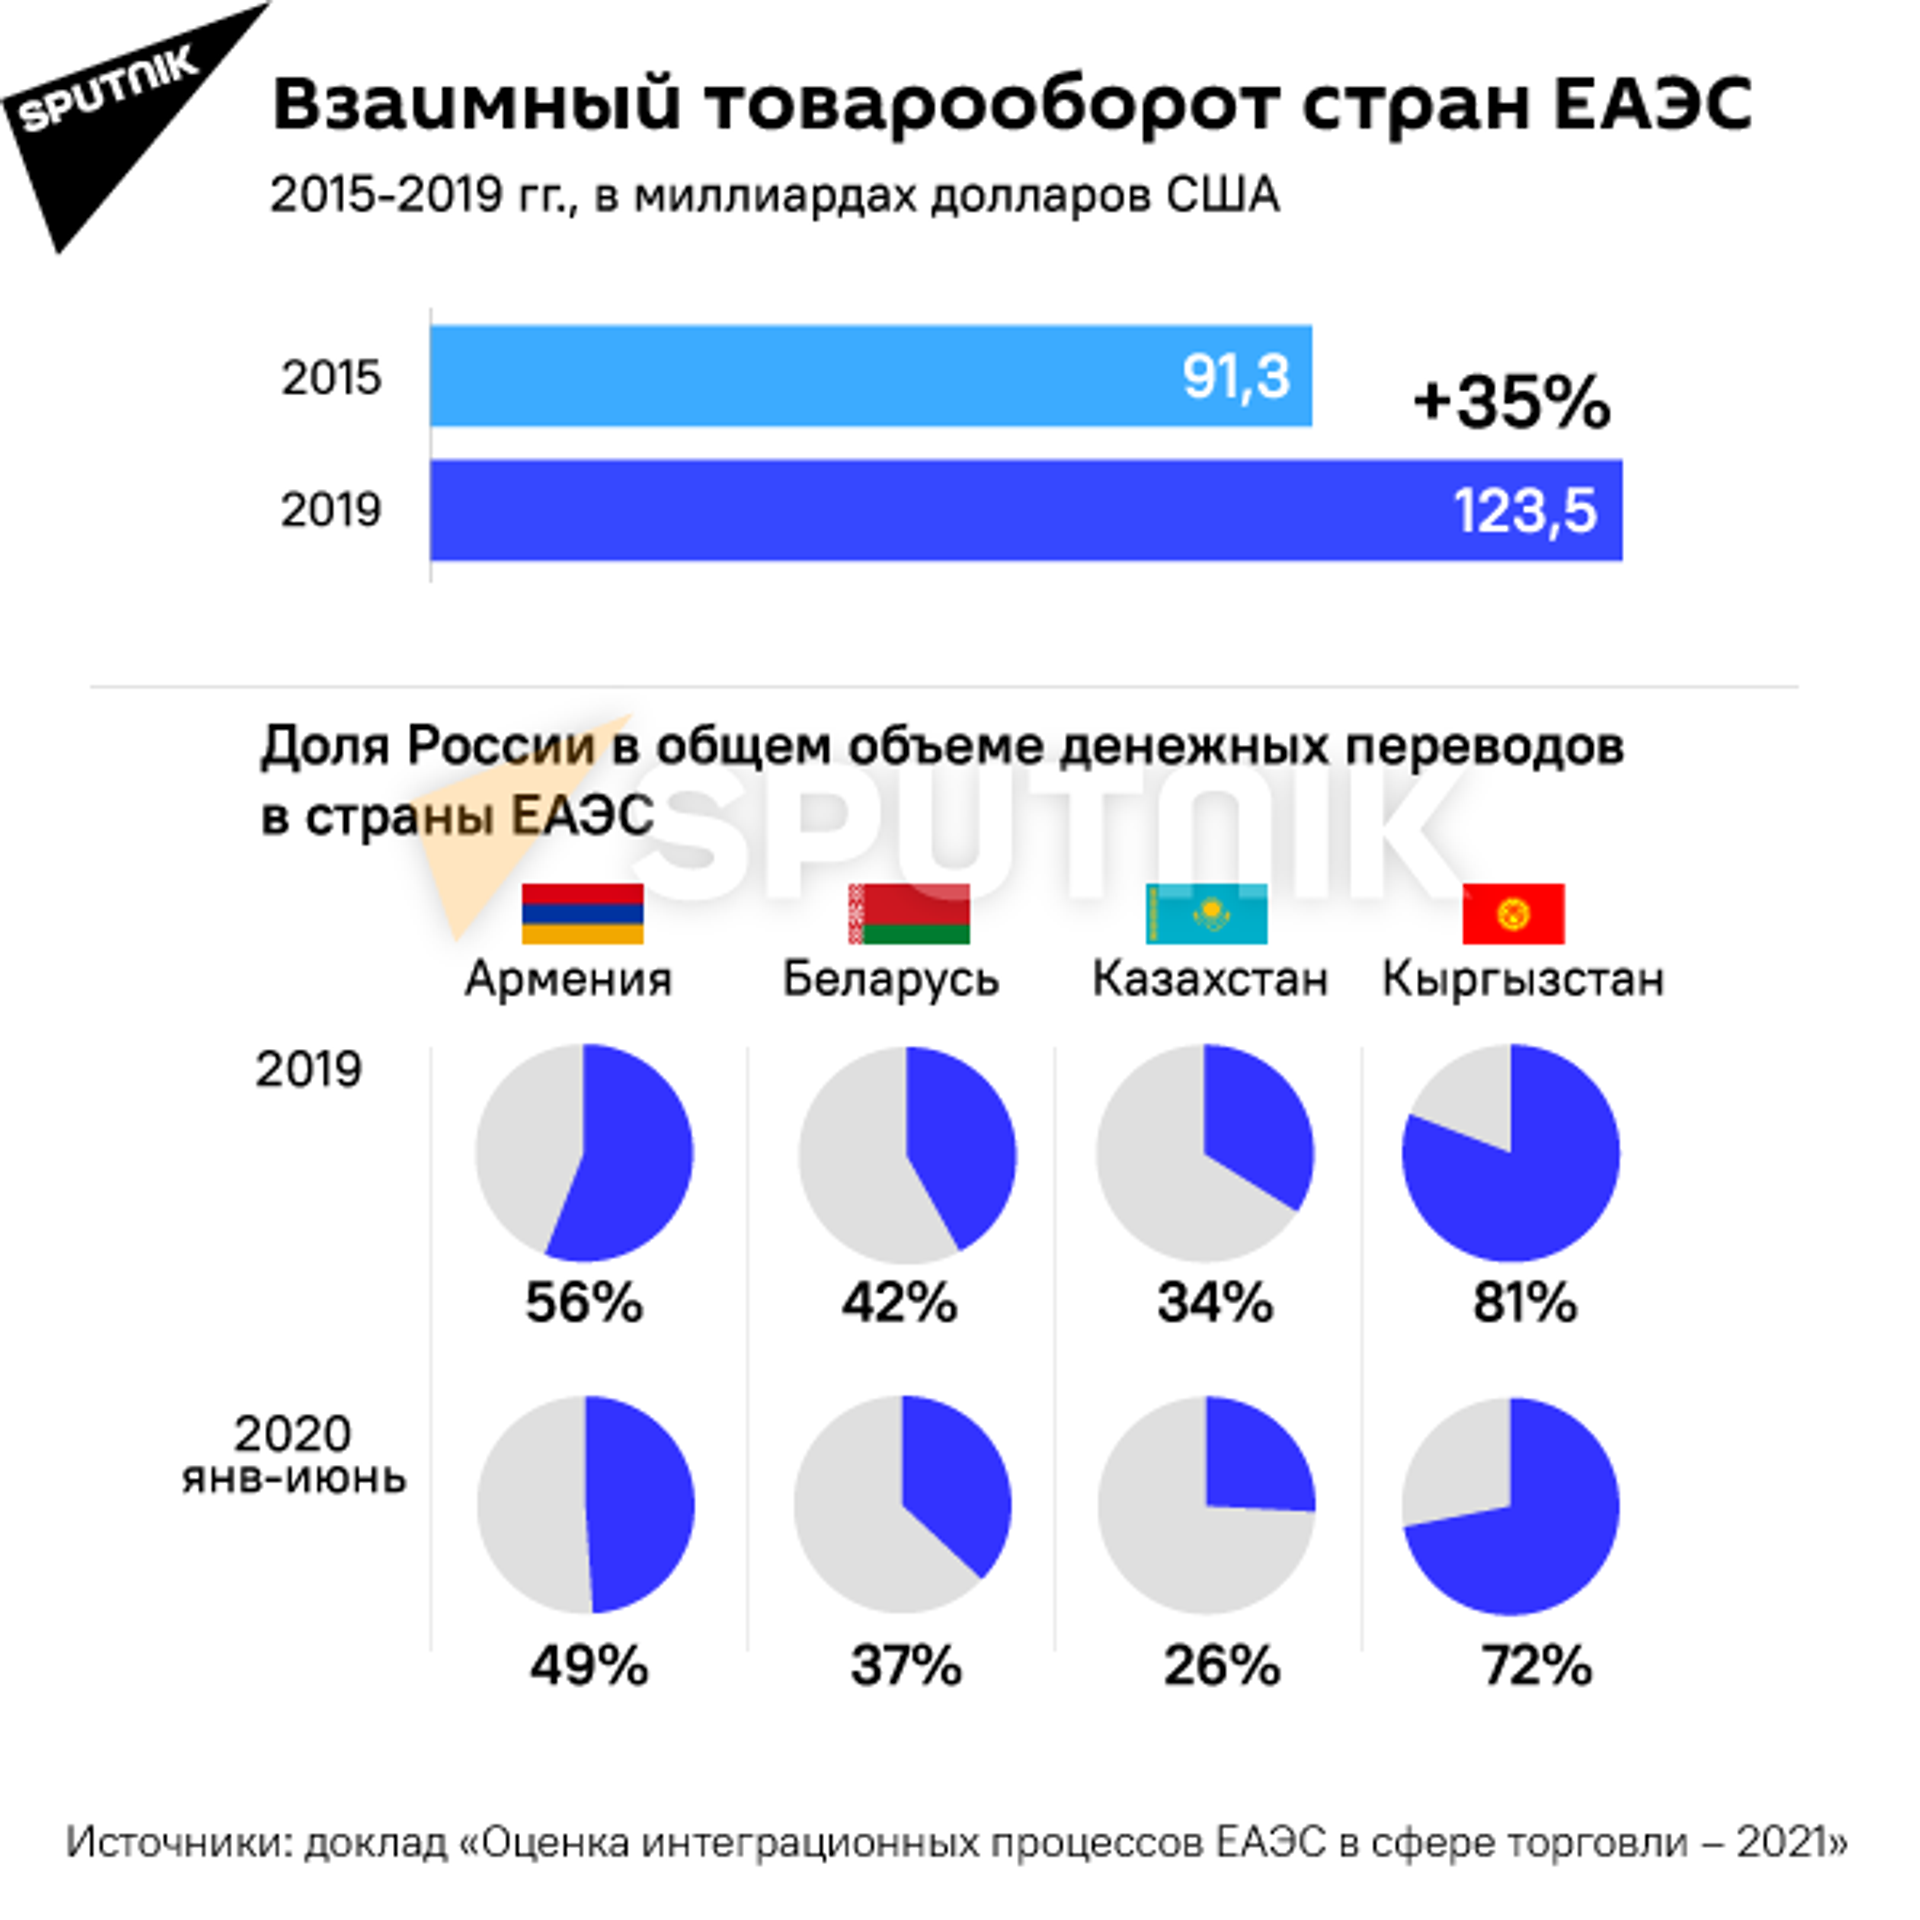 Трудности интеграции: что препятствует сближению стран ЕАЭС? - Sputnik Казахстан, 1920, 26.04.2021